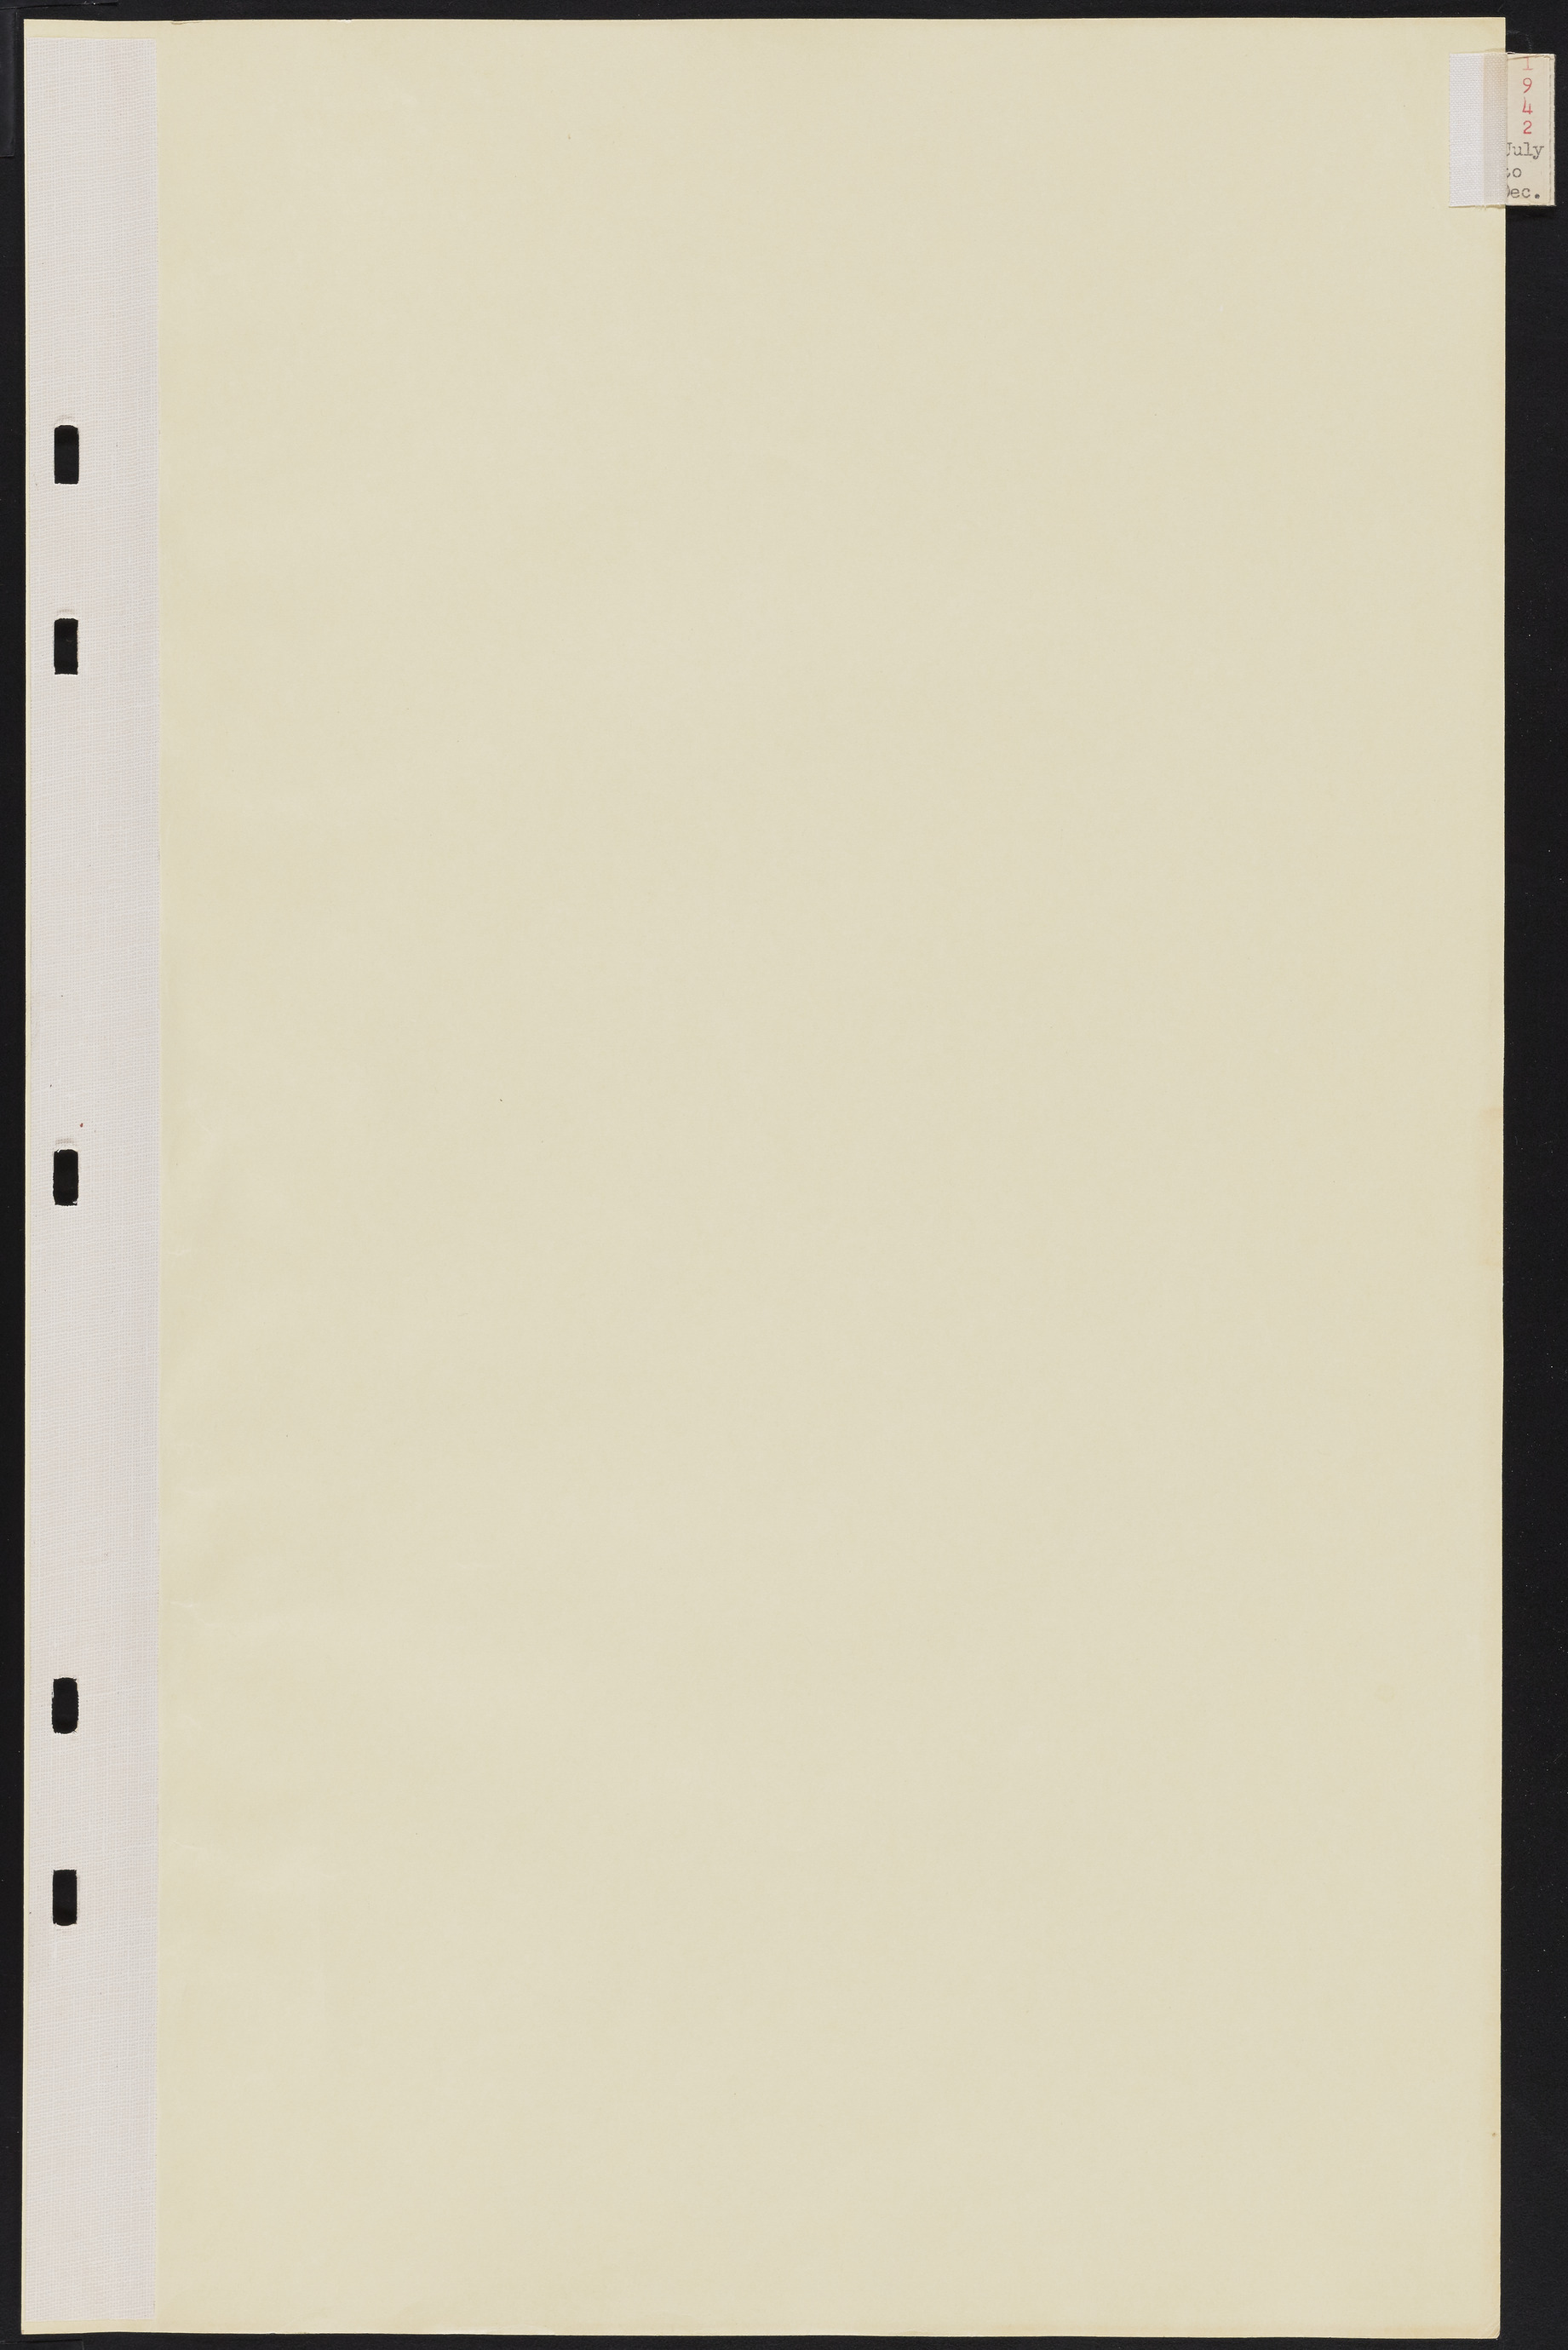 Las Vegas City Commission Minutes, August 11, 1942 to December 30, 1946, lvc000005-7